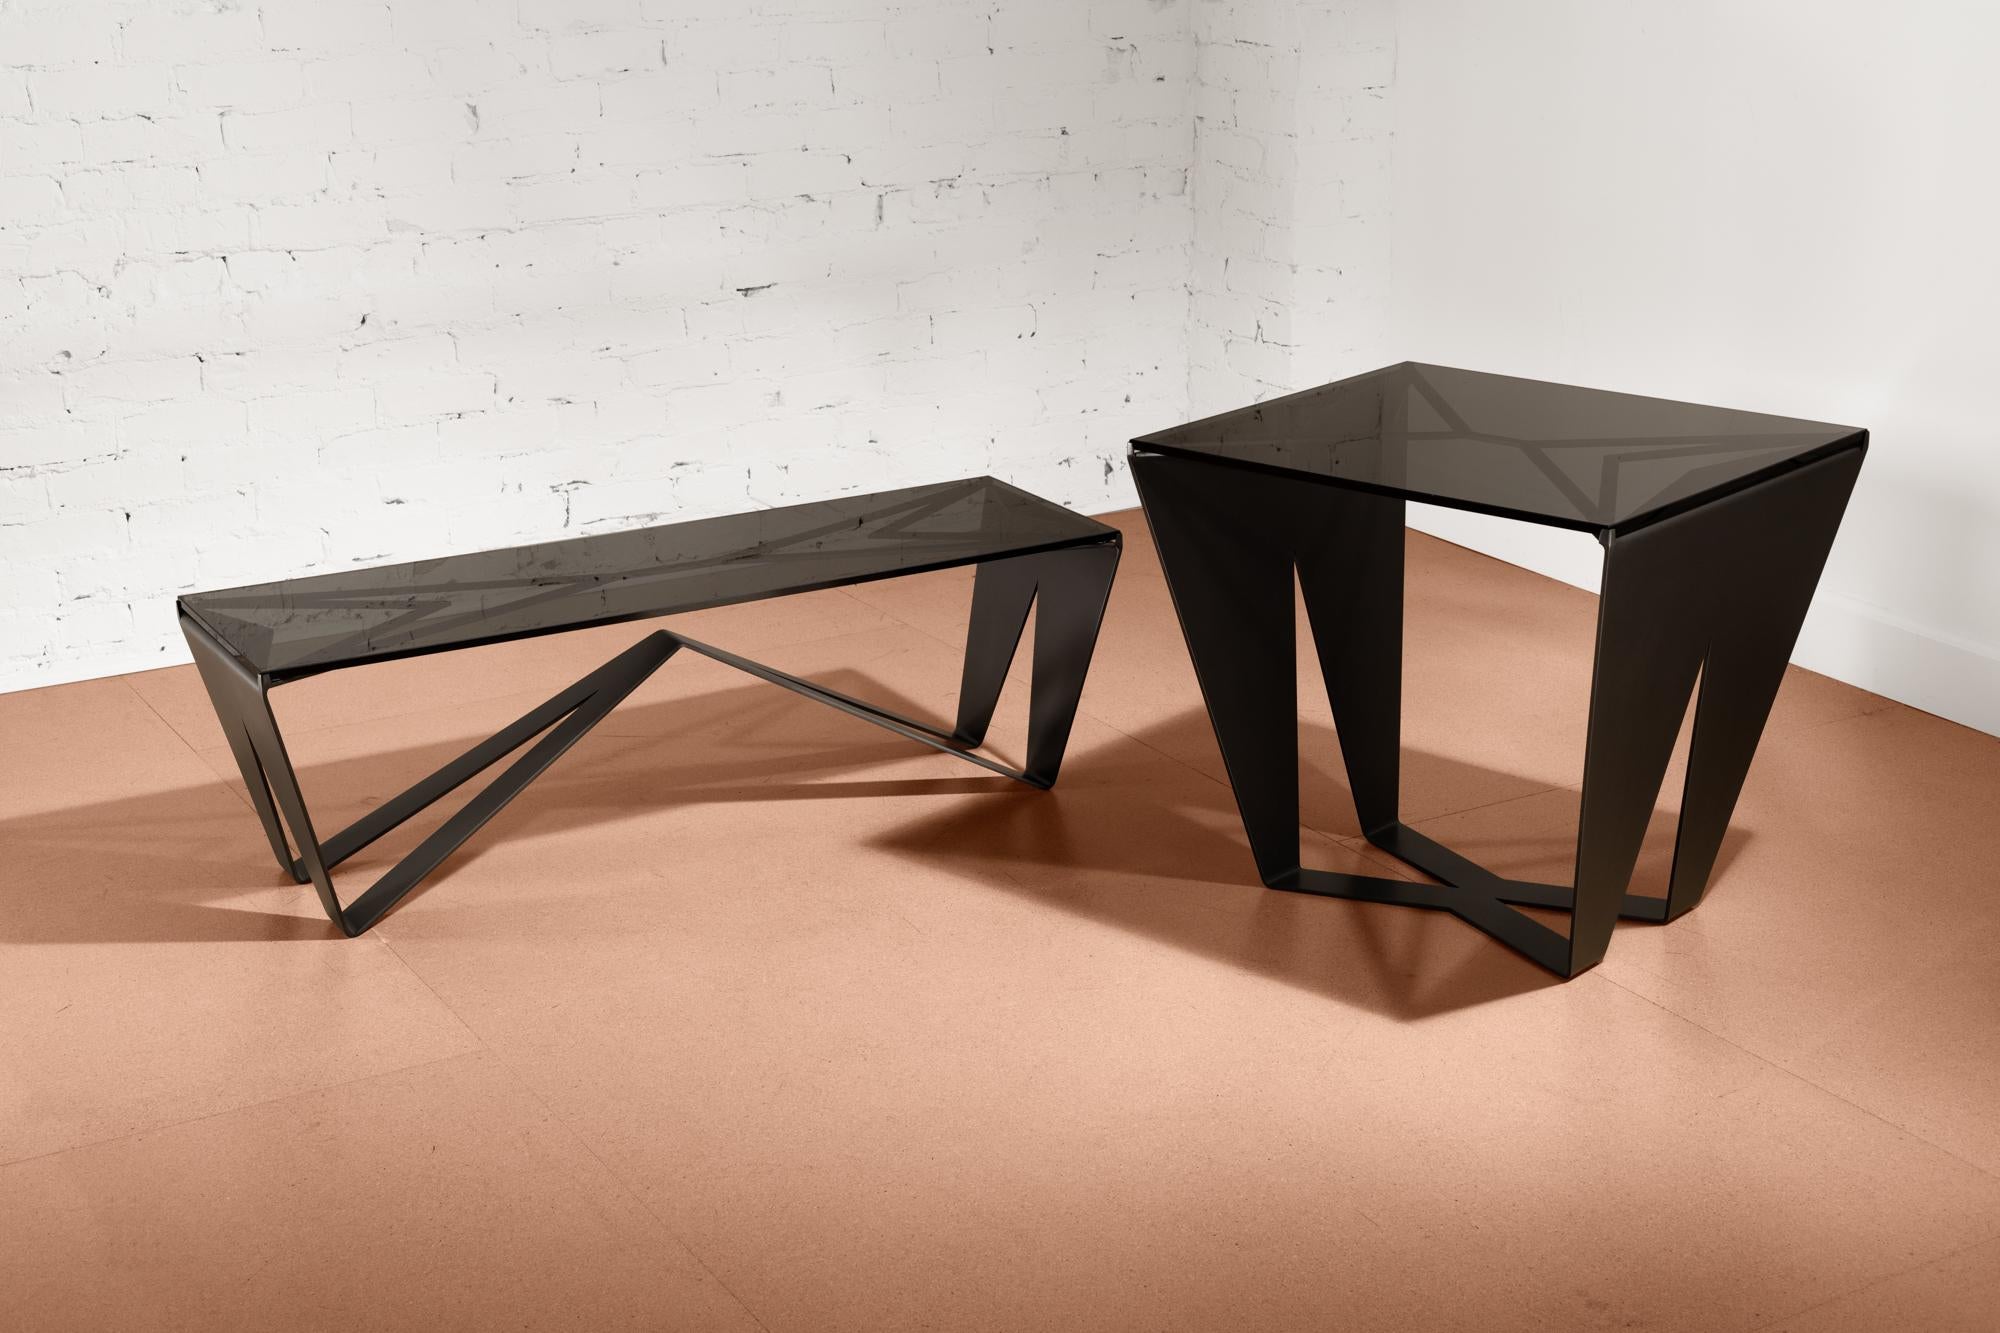 La table basse Domino fait partie d'un duo de tables gigognes finement construites et finies avec de l'acier oxydé noir satiné et du verre fumé. Cette table est aussi fonctionnelle qu'un meuble d'art pour la maison avec sa géométrie complexe. Le